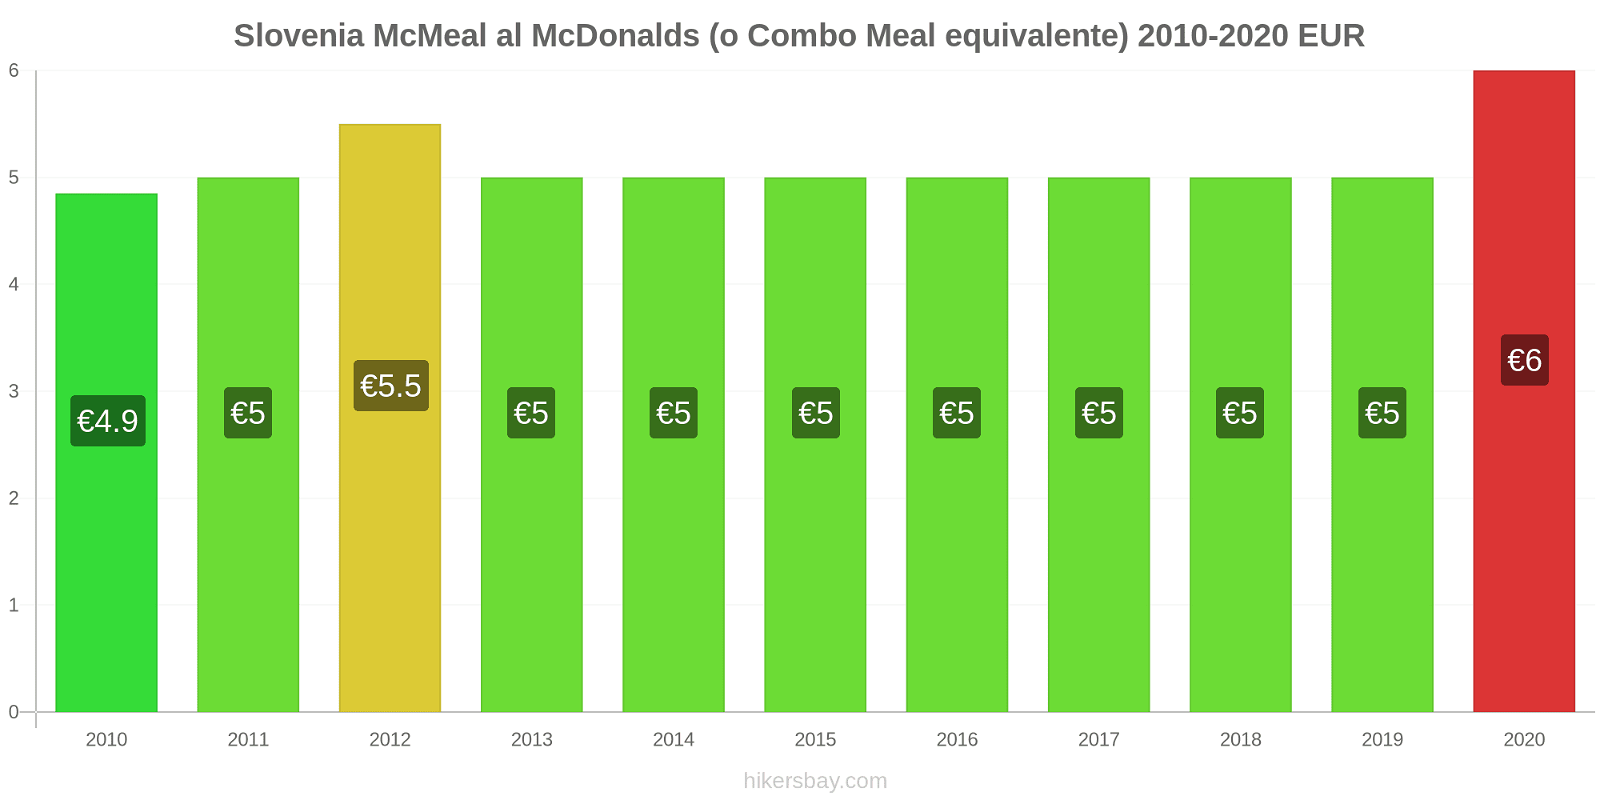 Slovenia variazioni di prezzo McMeal al McDonalds (o in un equivalente fastfood) hikersbay.com